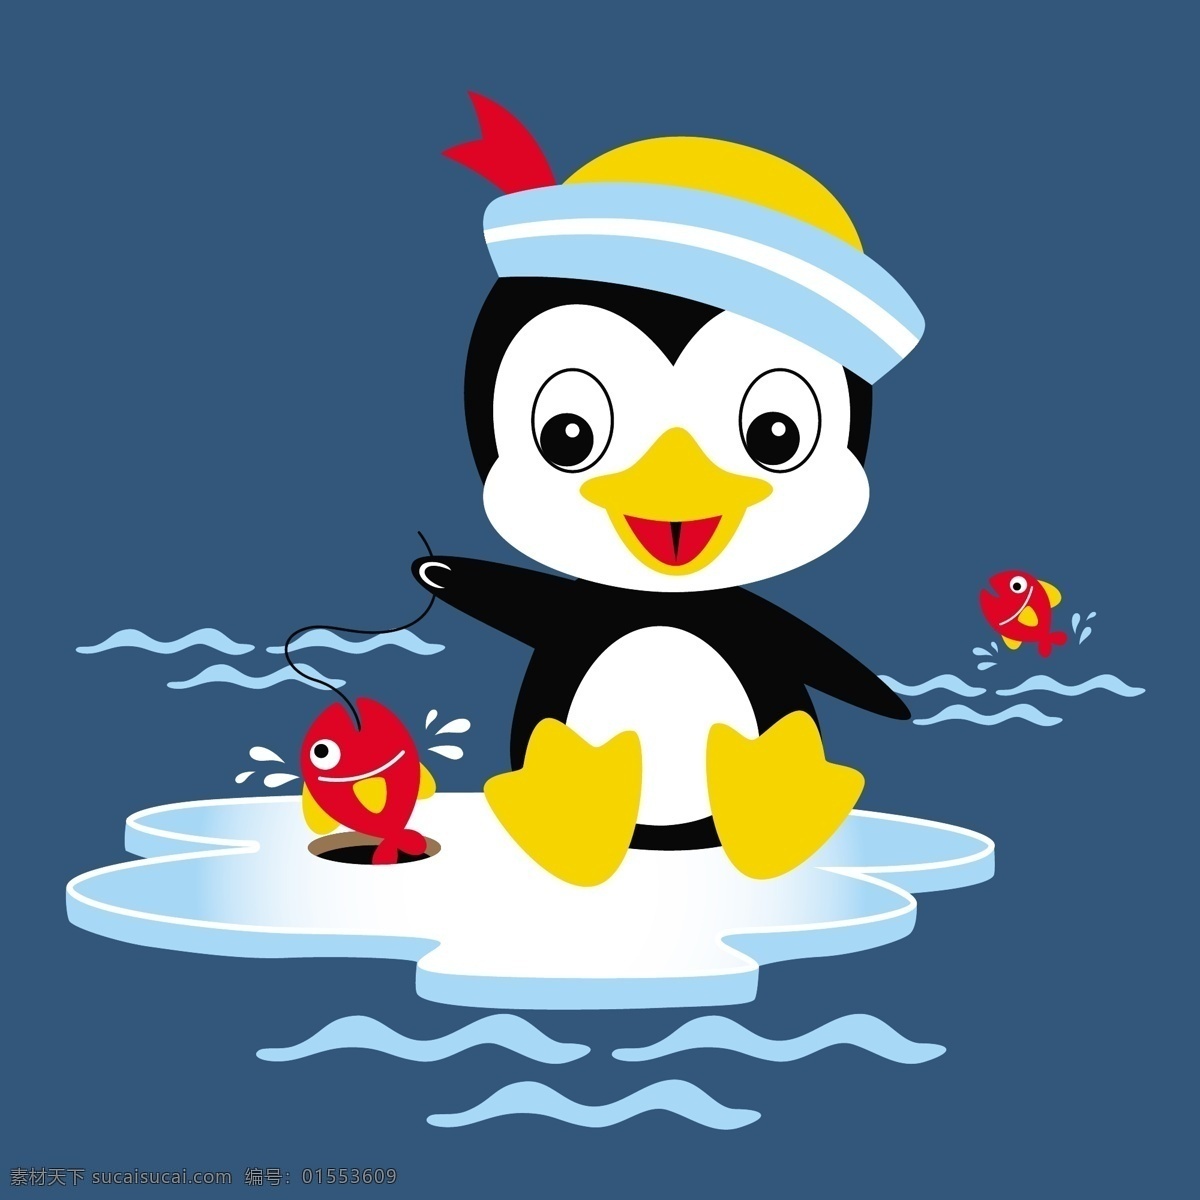 可爱 企鹅 海上 捉 鱼 卡通壁纸 卡通动漫 卡通 小动物 儿童绘画 企鹅捉鱼